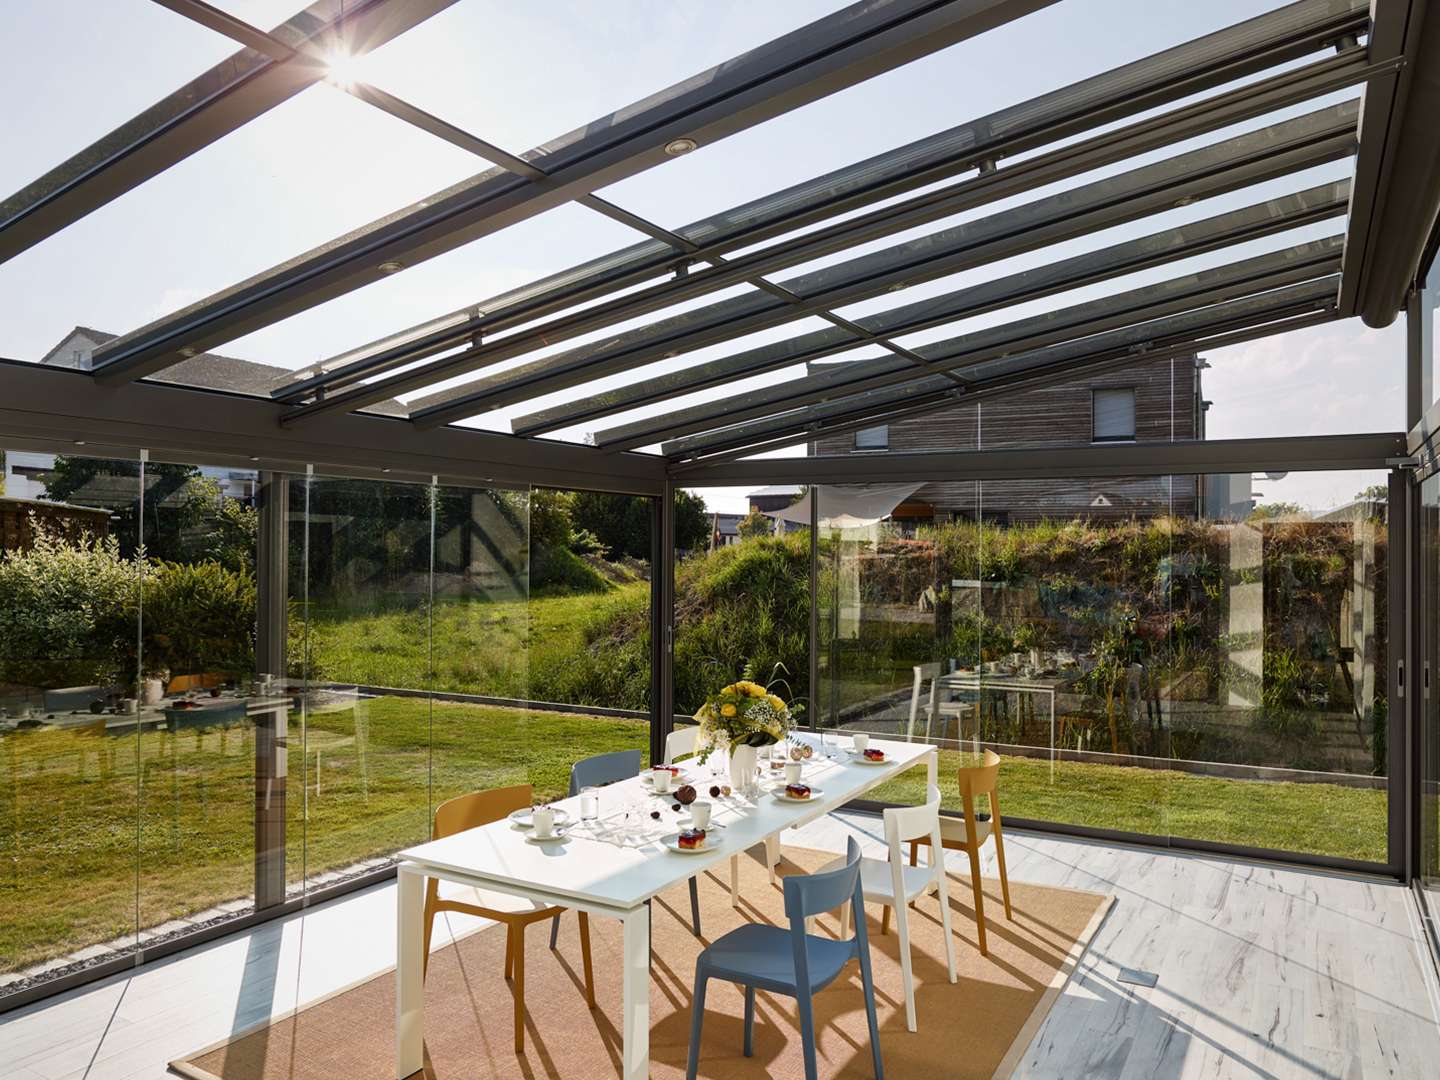 Innenansicht eines Glashauses mit Esstisch mit Blick in den grünen Garten